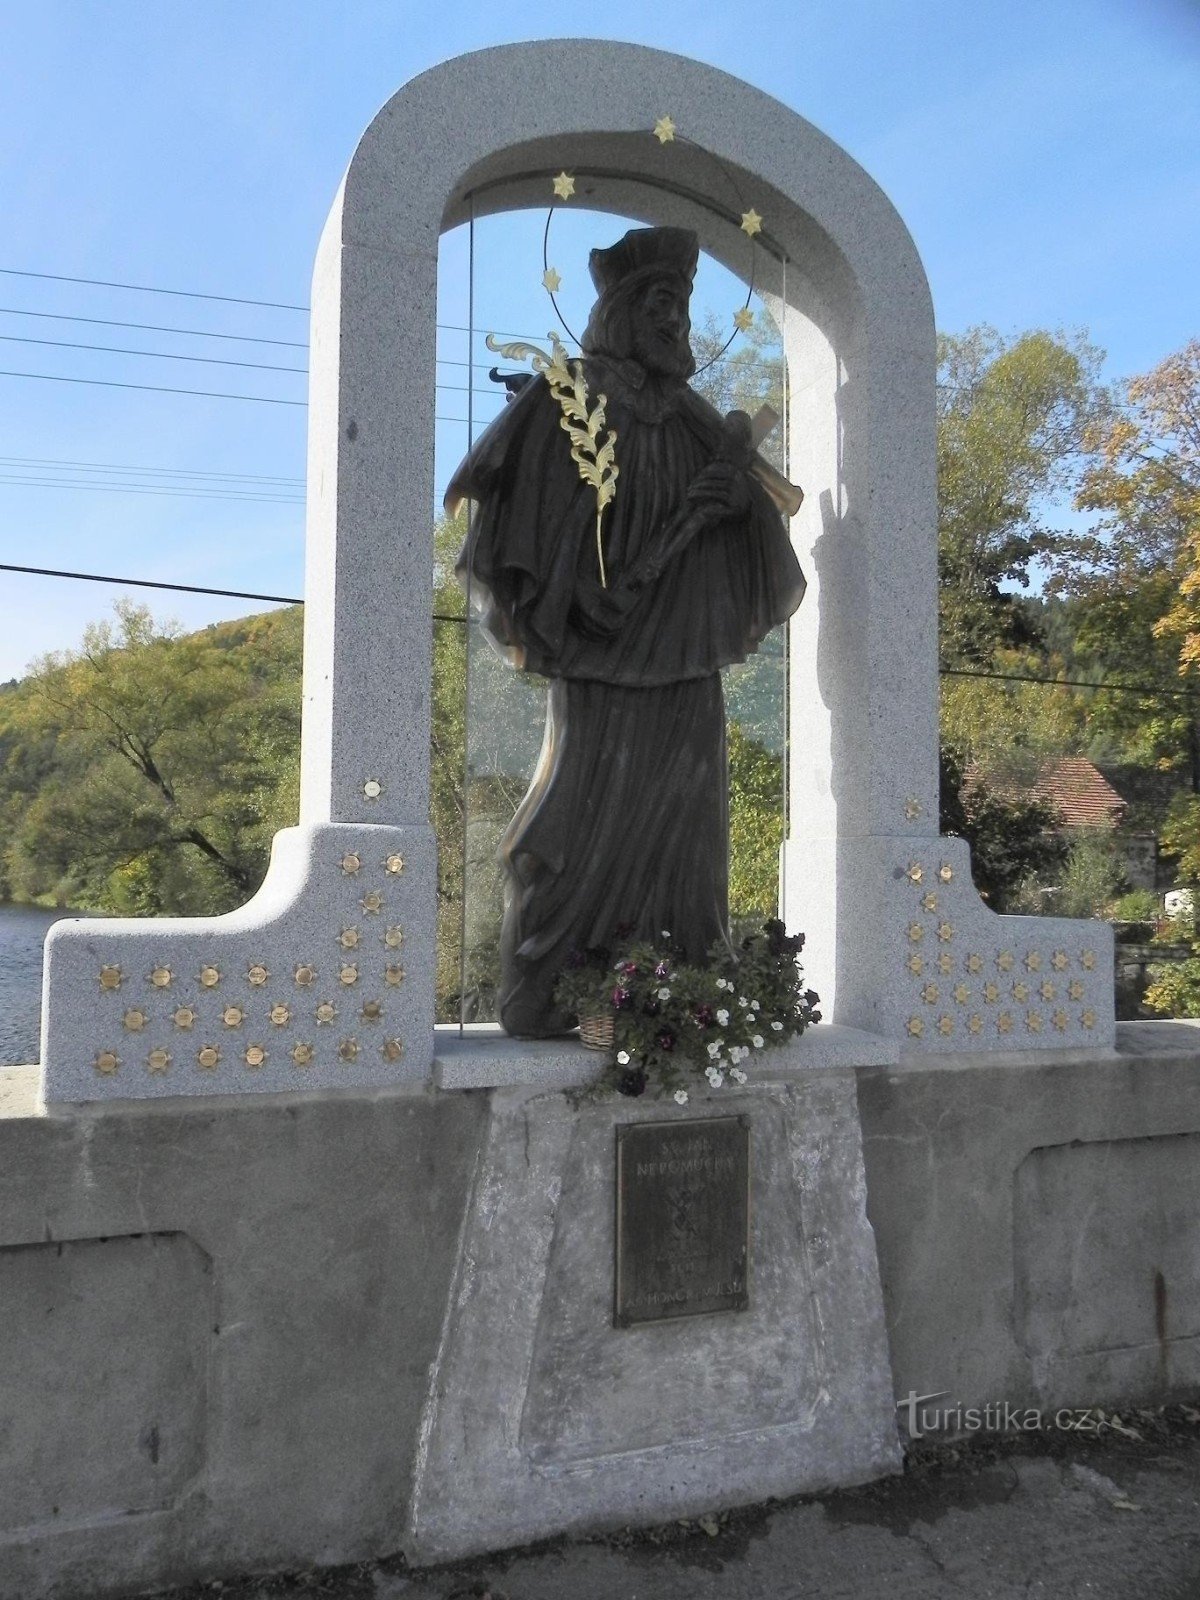 帽子，圣约翰的玻璃雕像。 Nepomuk 的约翰在桥上